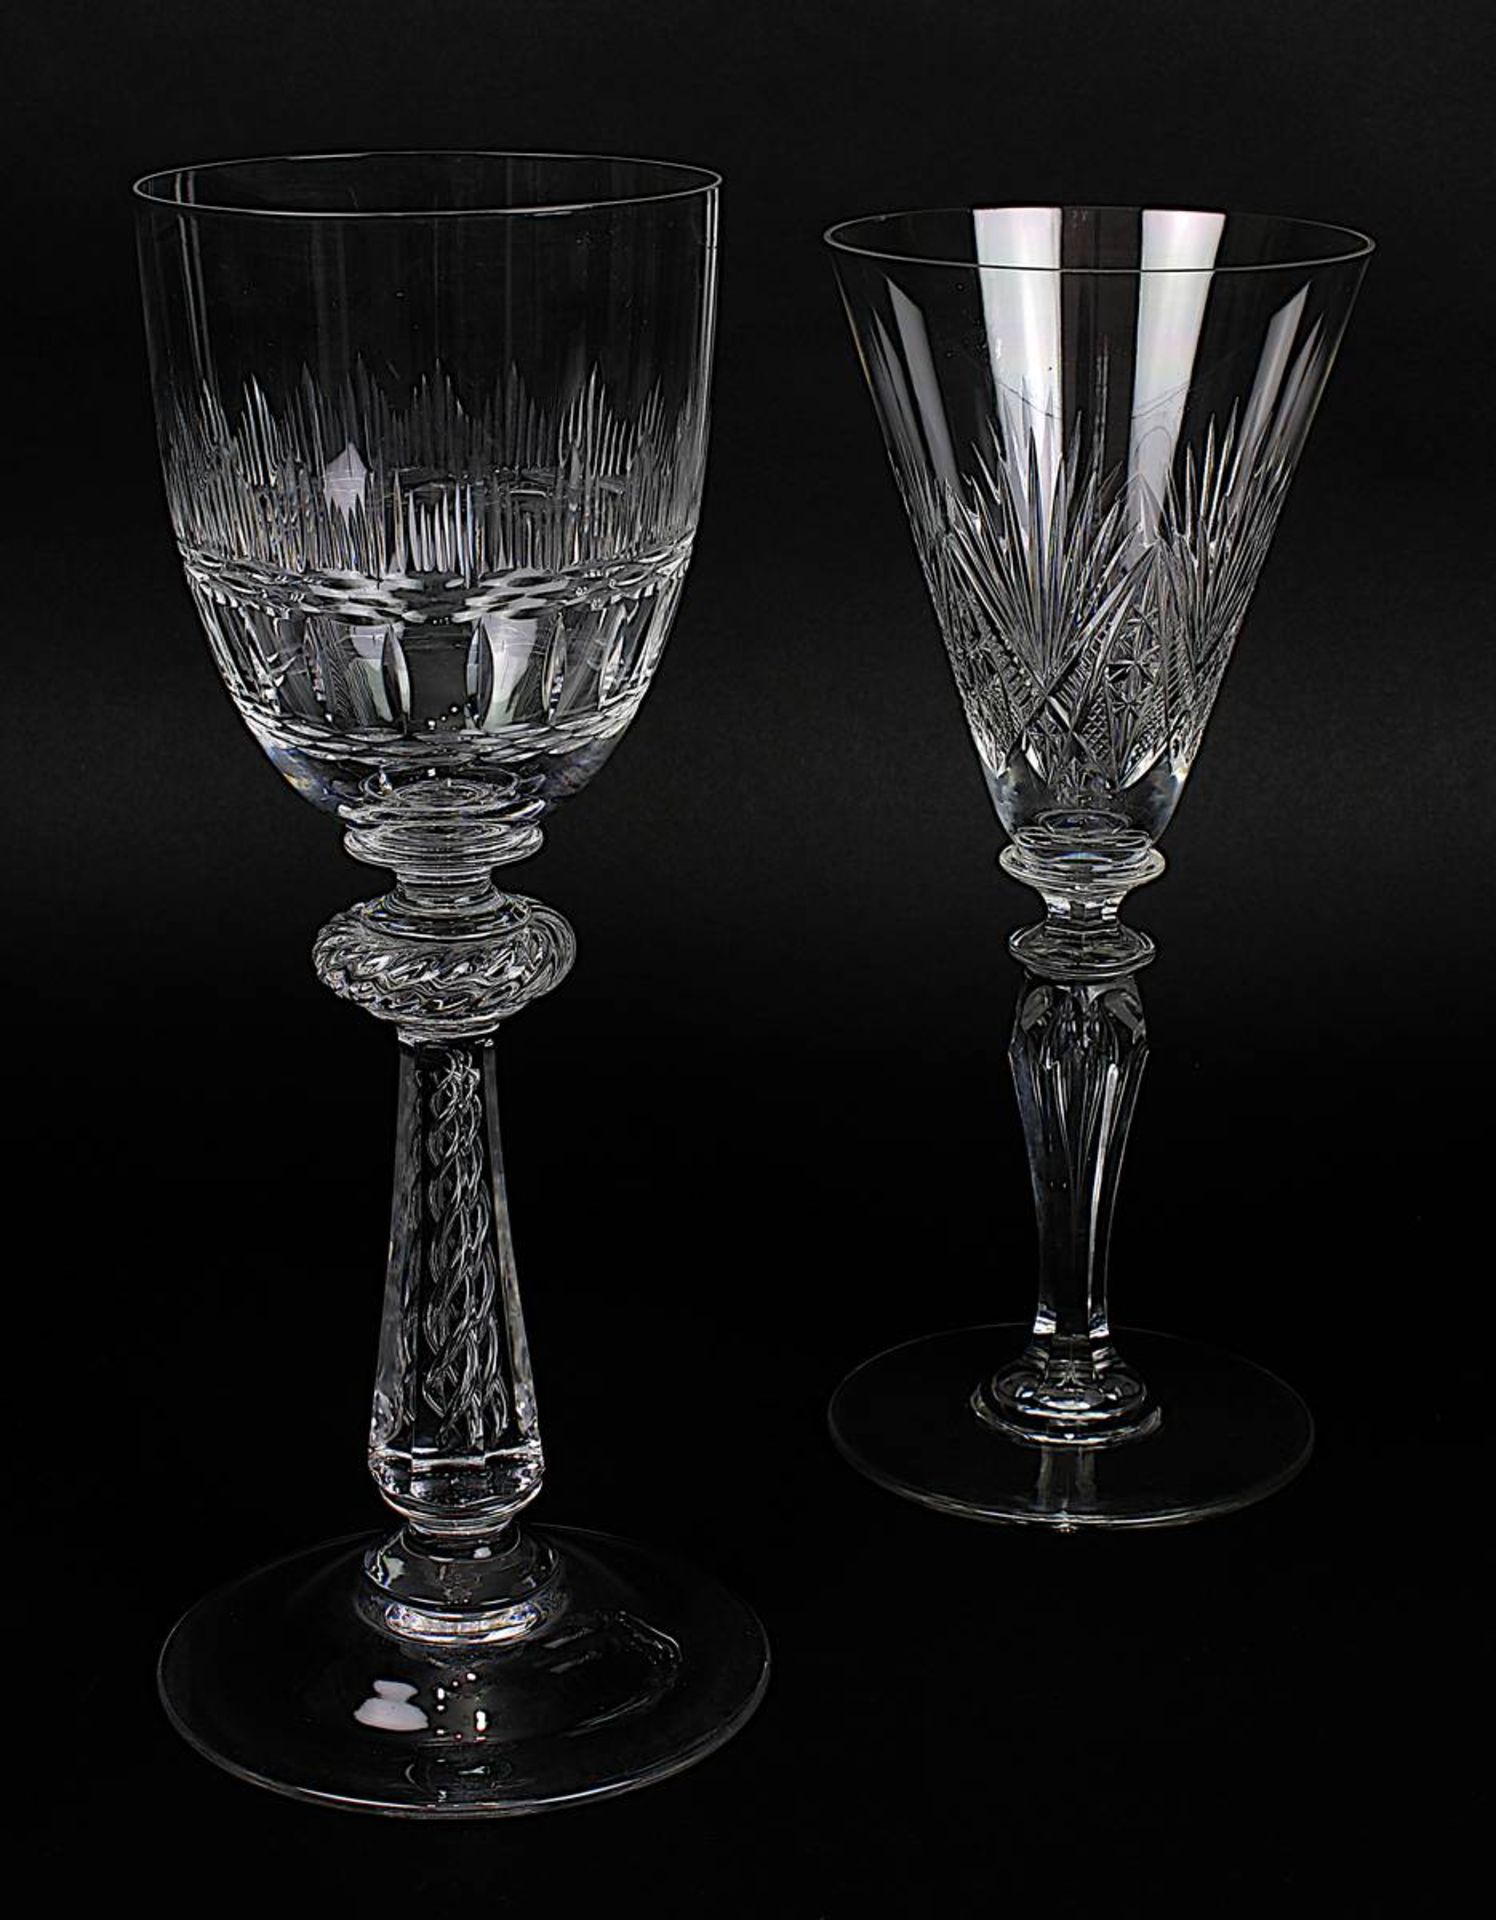 2 hohe Pokale Josephinenhütte, um 1900, klares Kristallglas, das eine trichterförmig, das andere